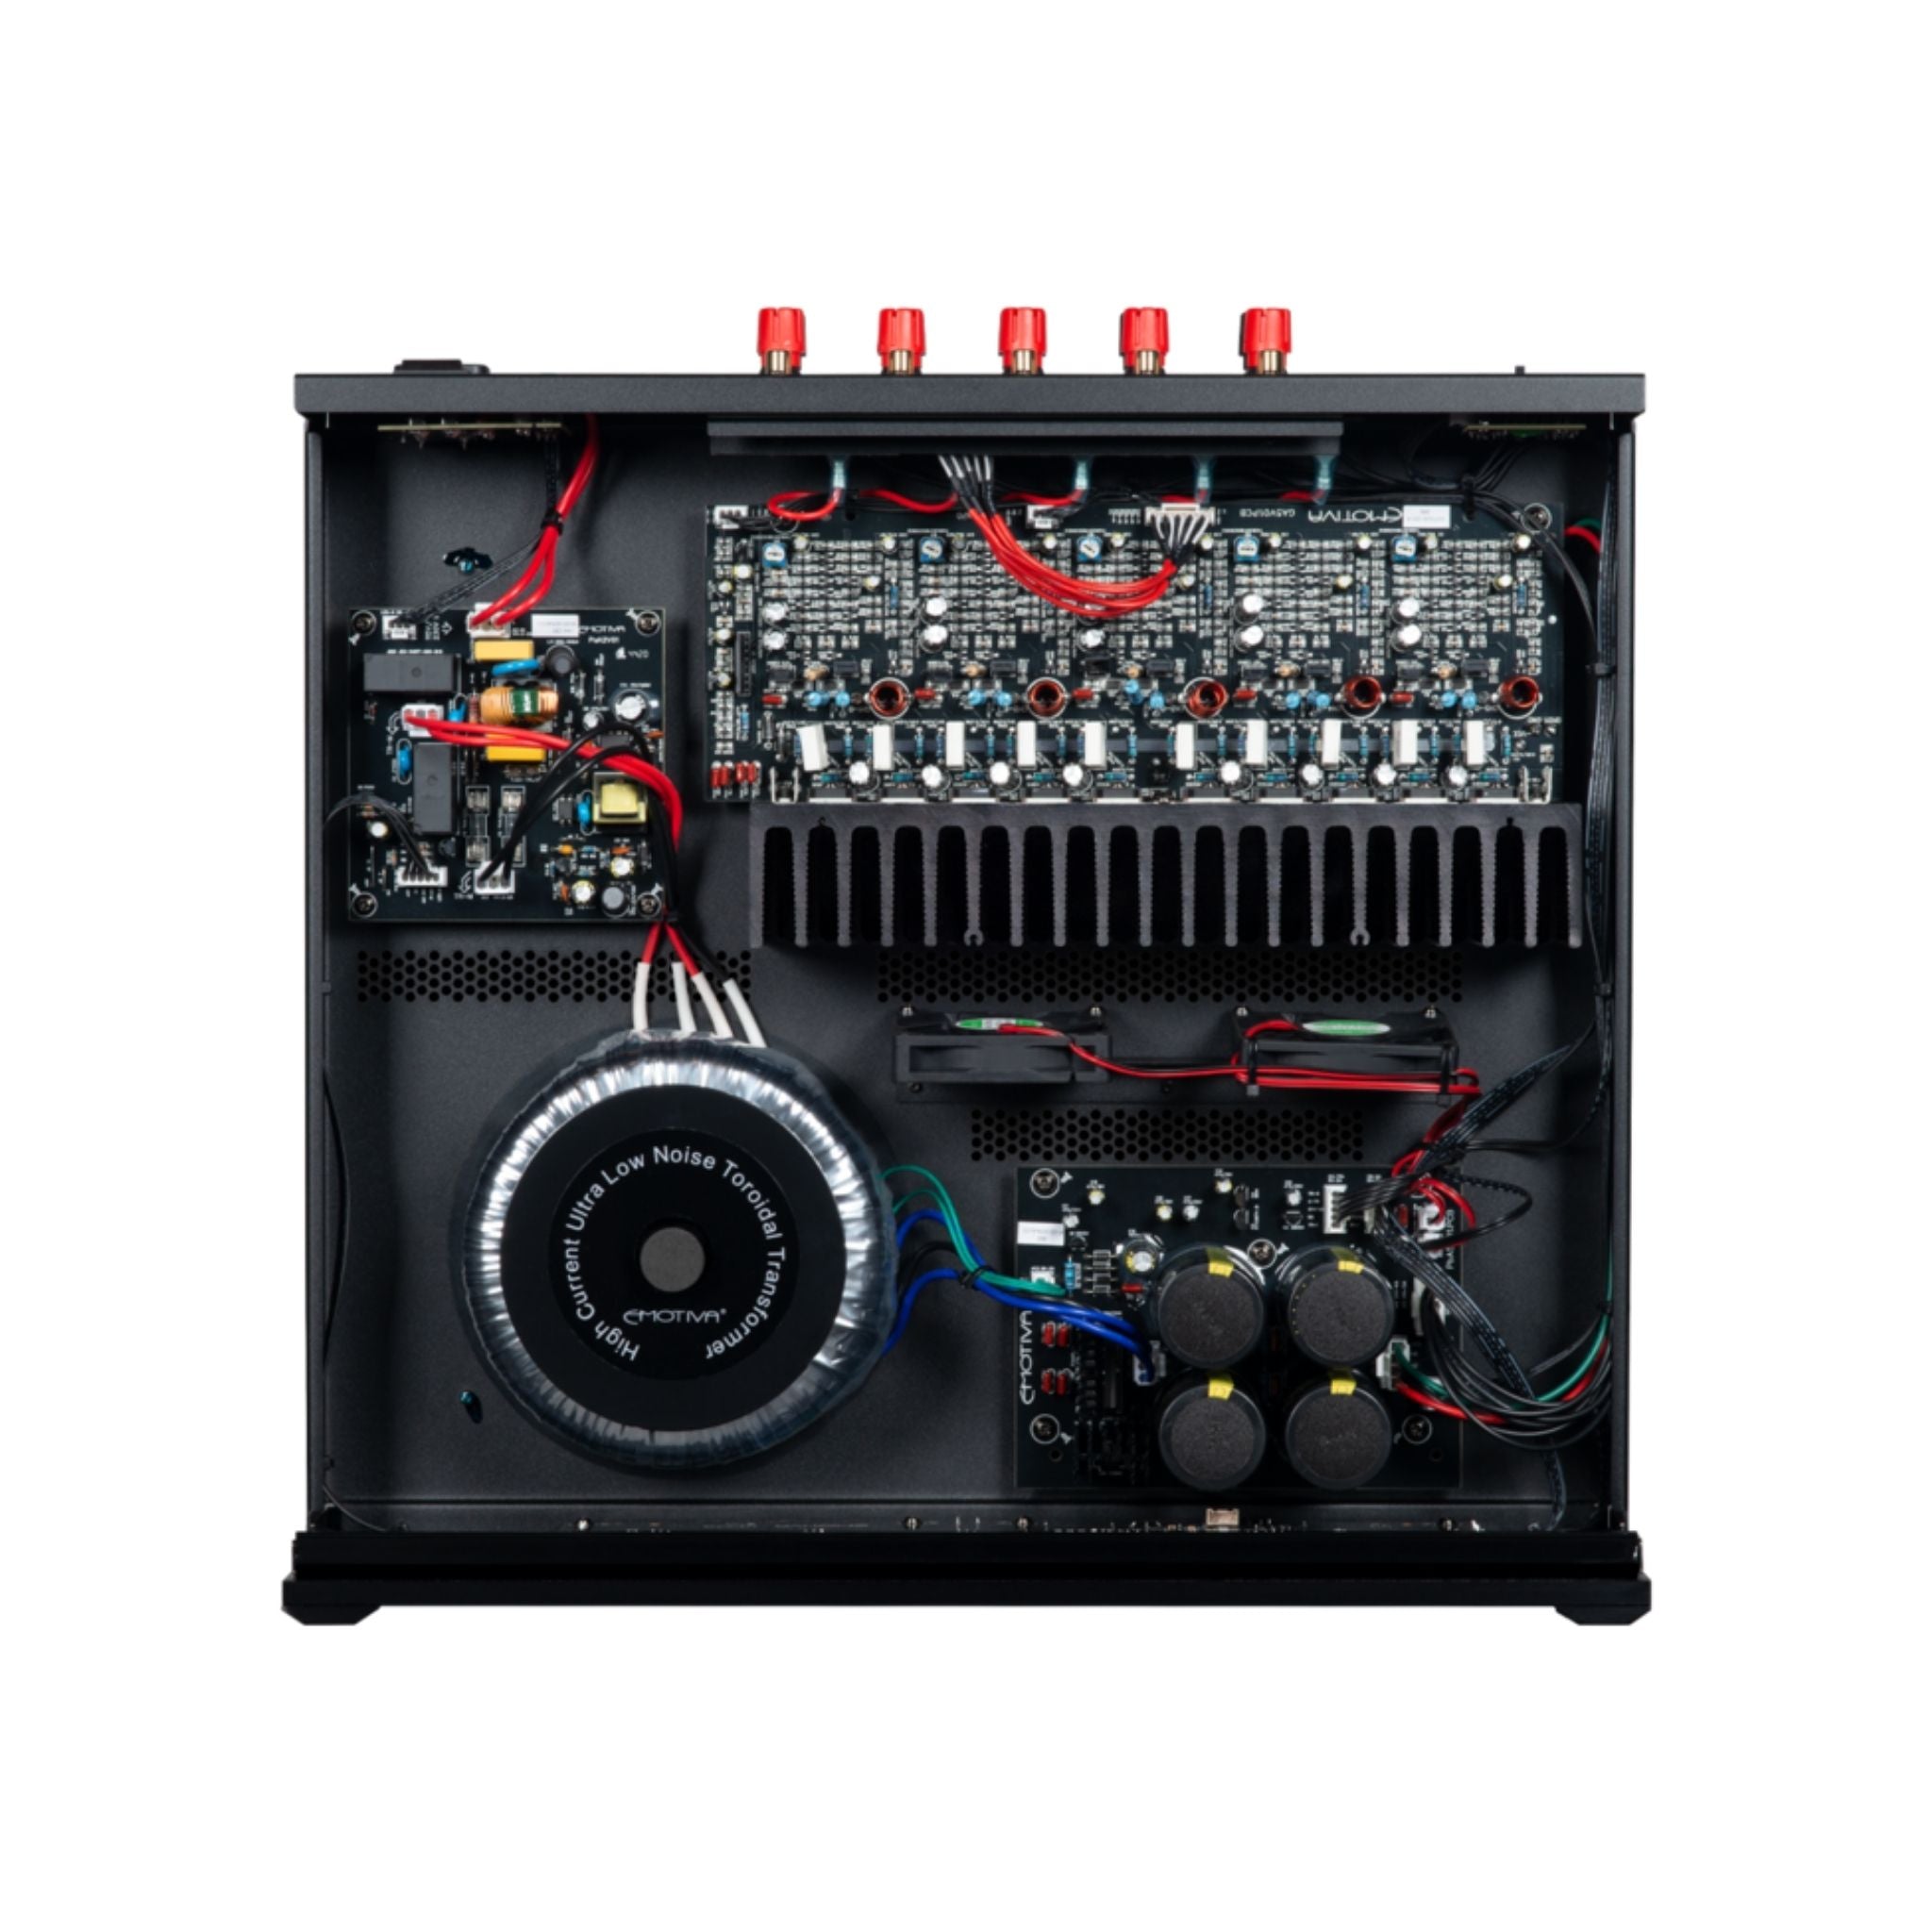 Emotiva BasX A5 - Five Channel Power Amplifier - AVStore